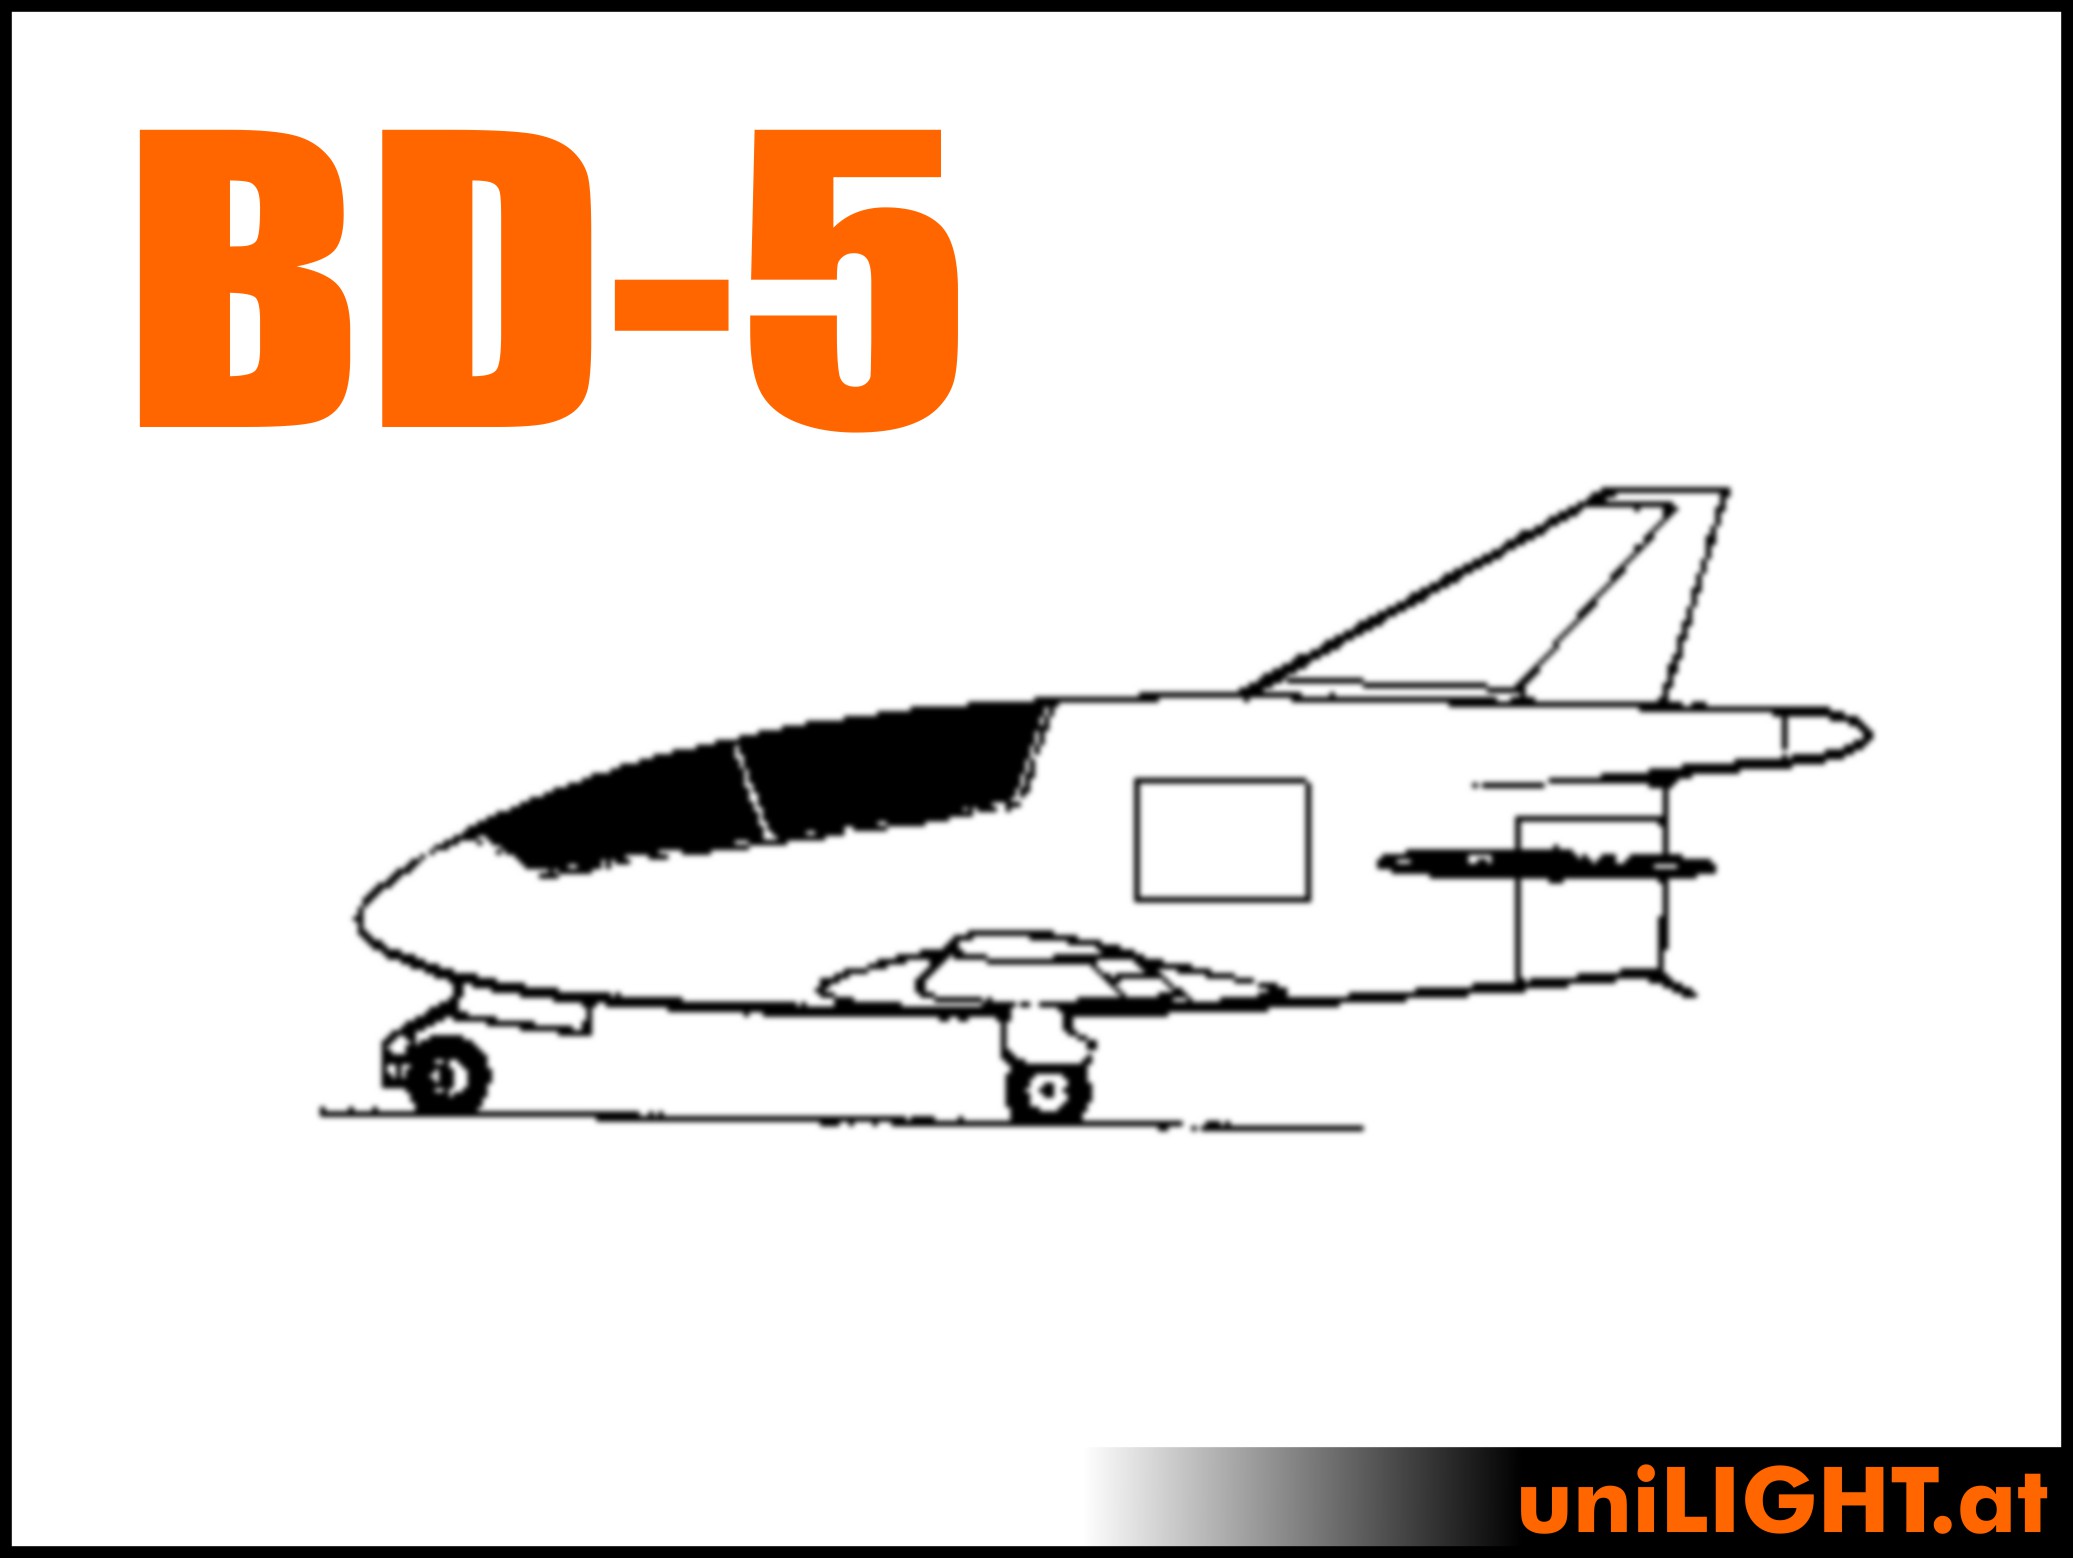 Bede BD-5